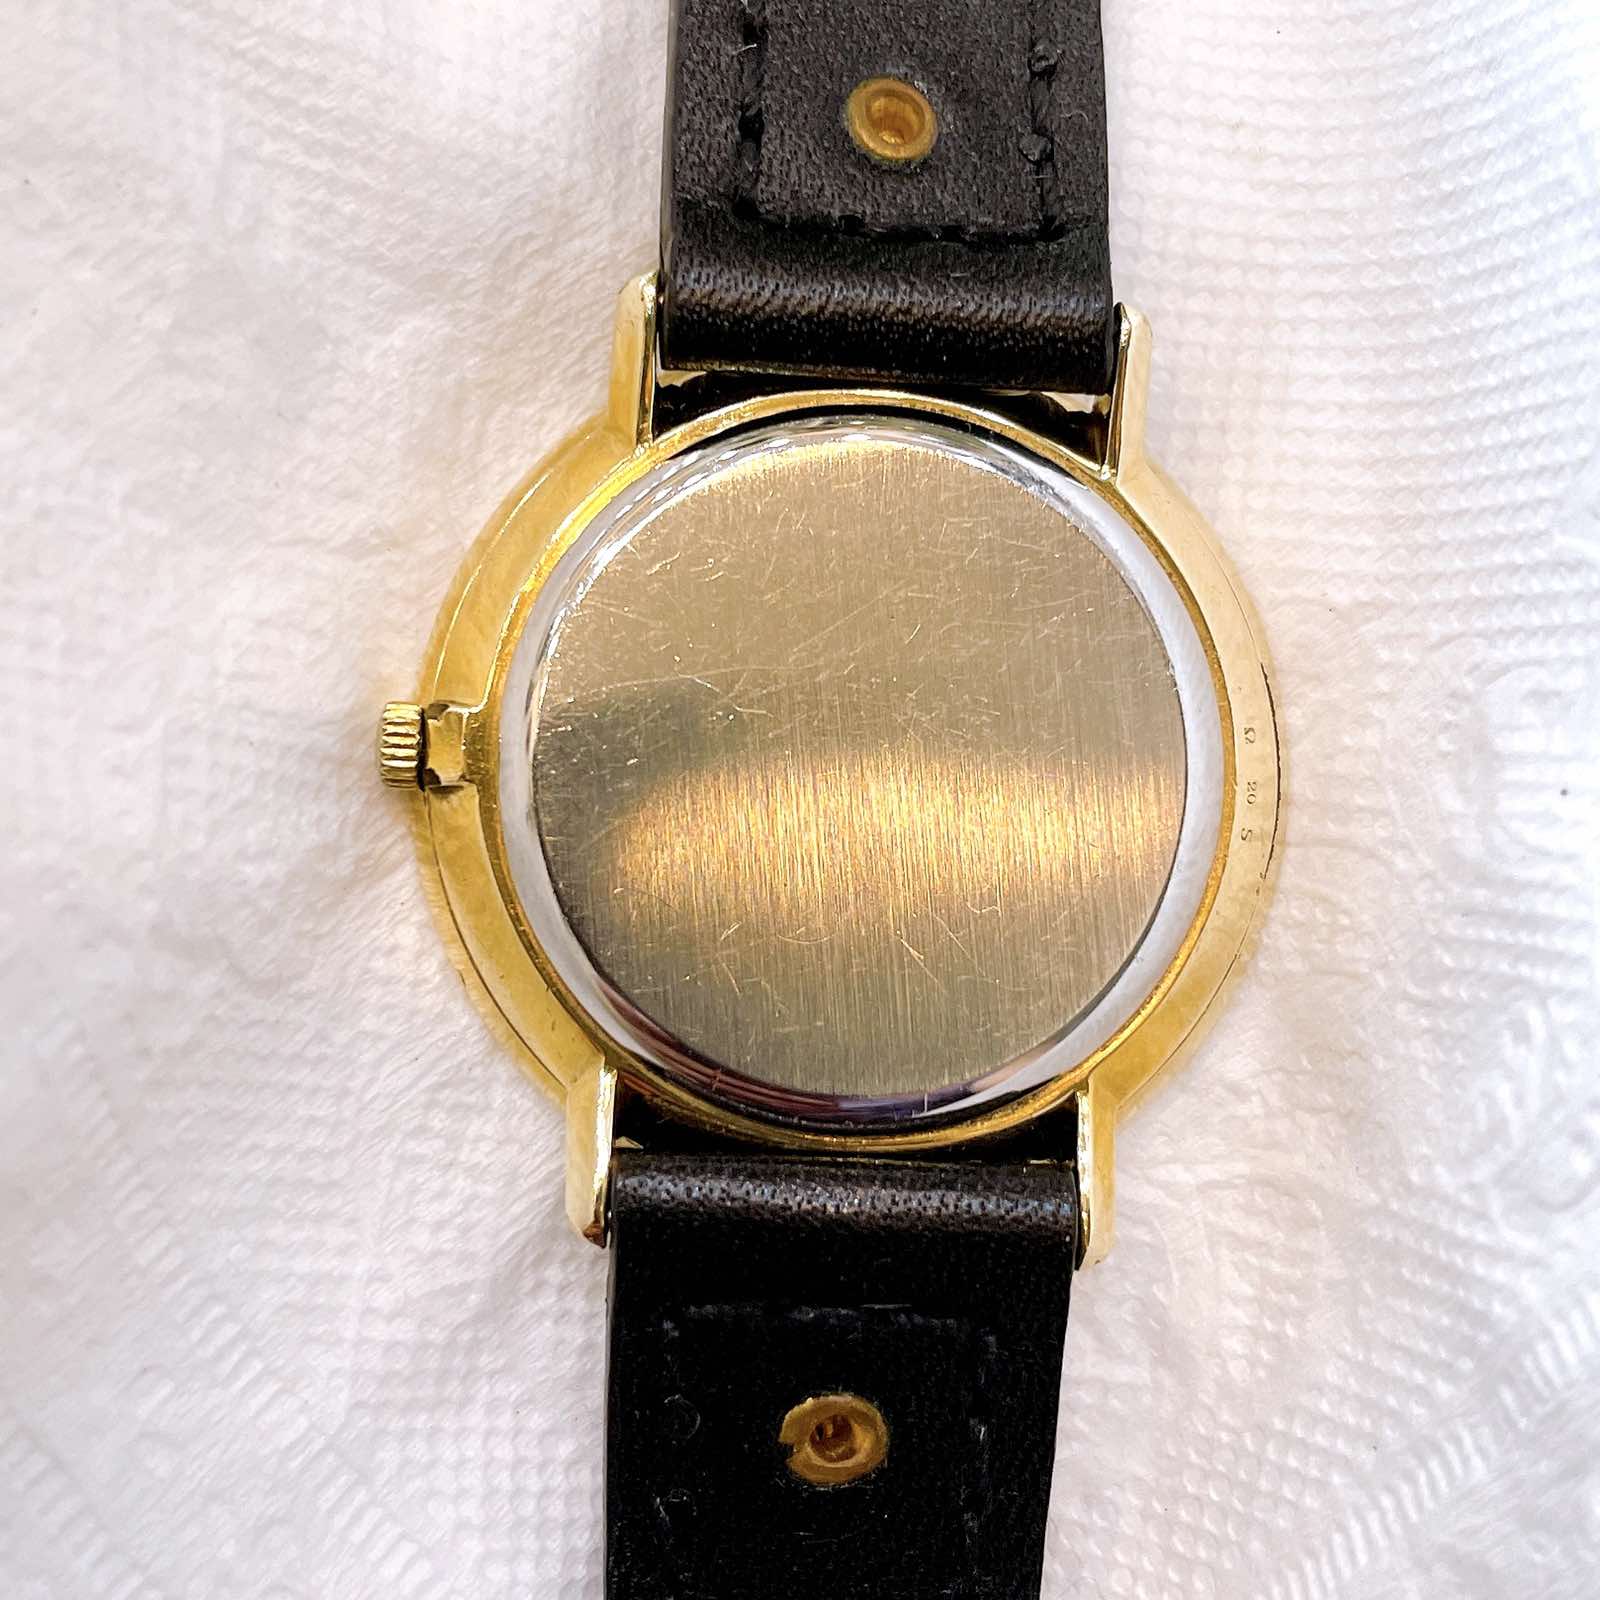 Đồng hồ Omega De Ville Automatic chính hãng Thụy Sĩ